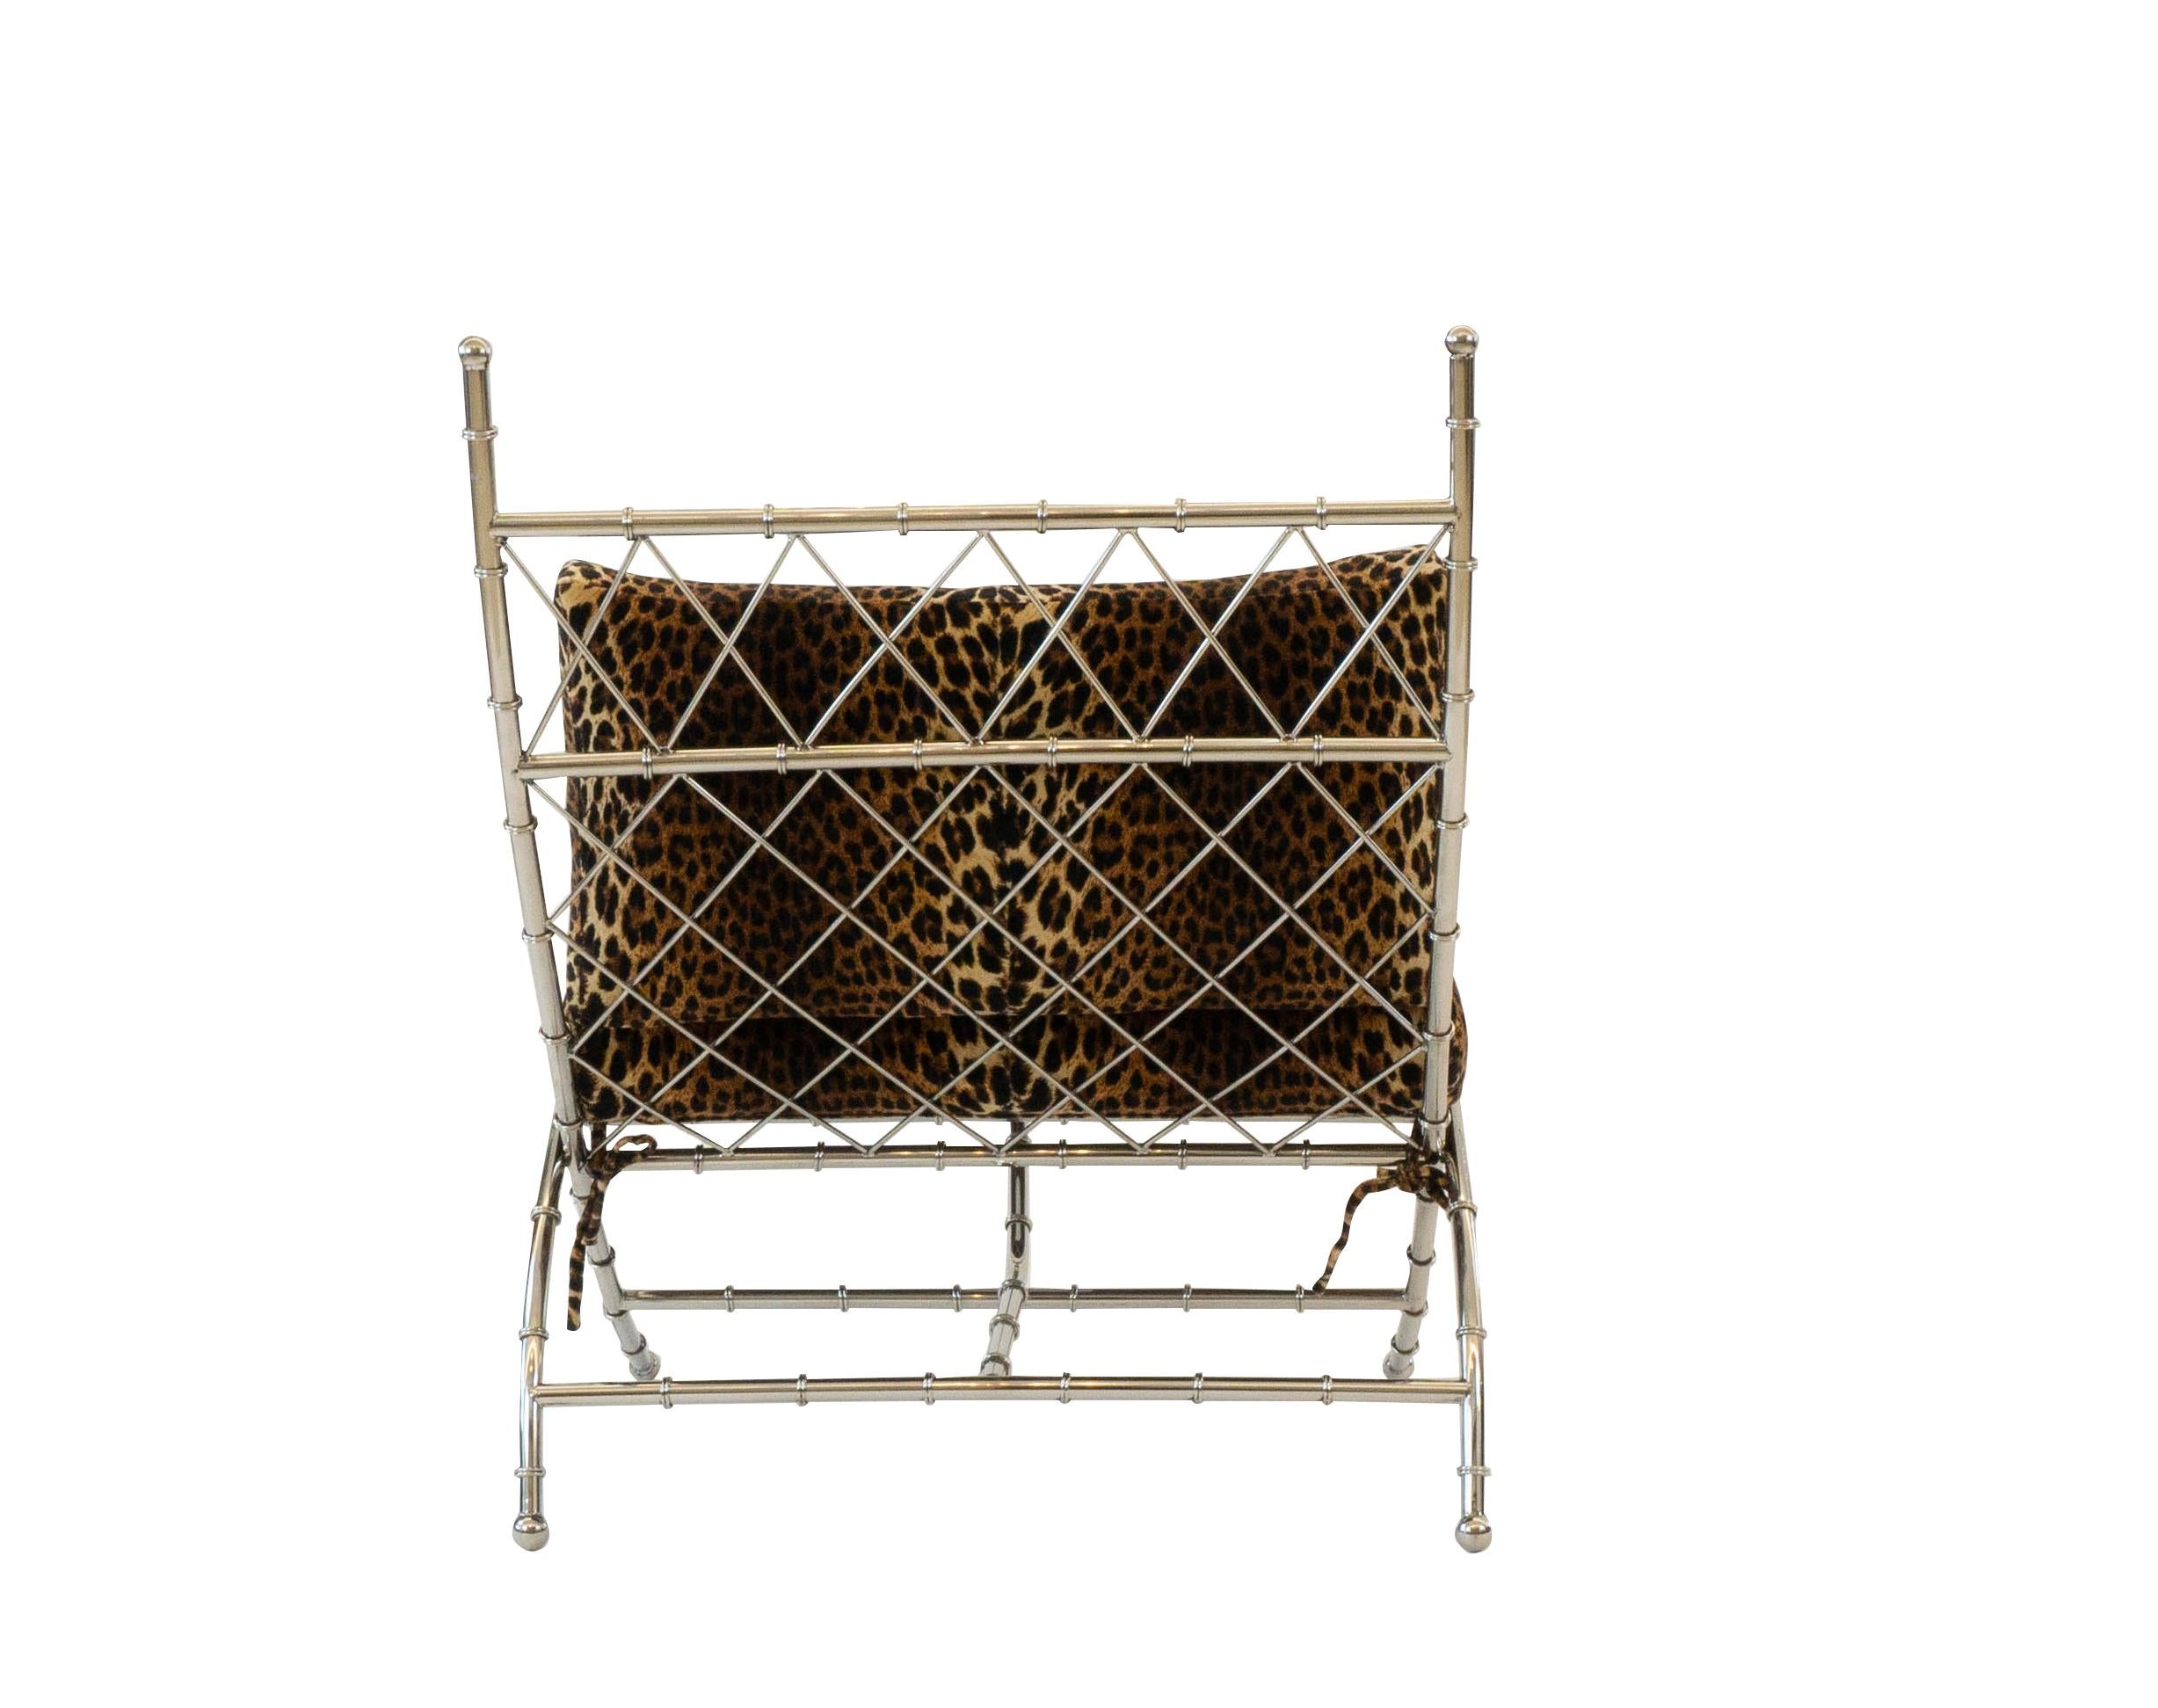 Ce fauteuil pliable en métal et bambou, recouvert de Panthéer Pierre Frey, est une pièce étonnante et polyvalente, parfaite pour un petit espace. La tapisserie est personnalisable. 

Mesures : 36.25